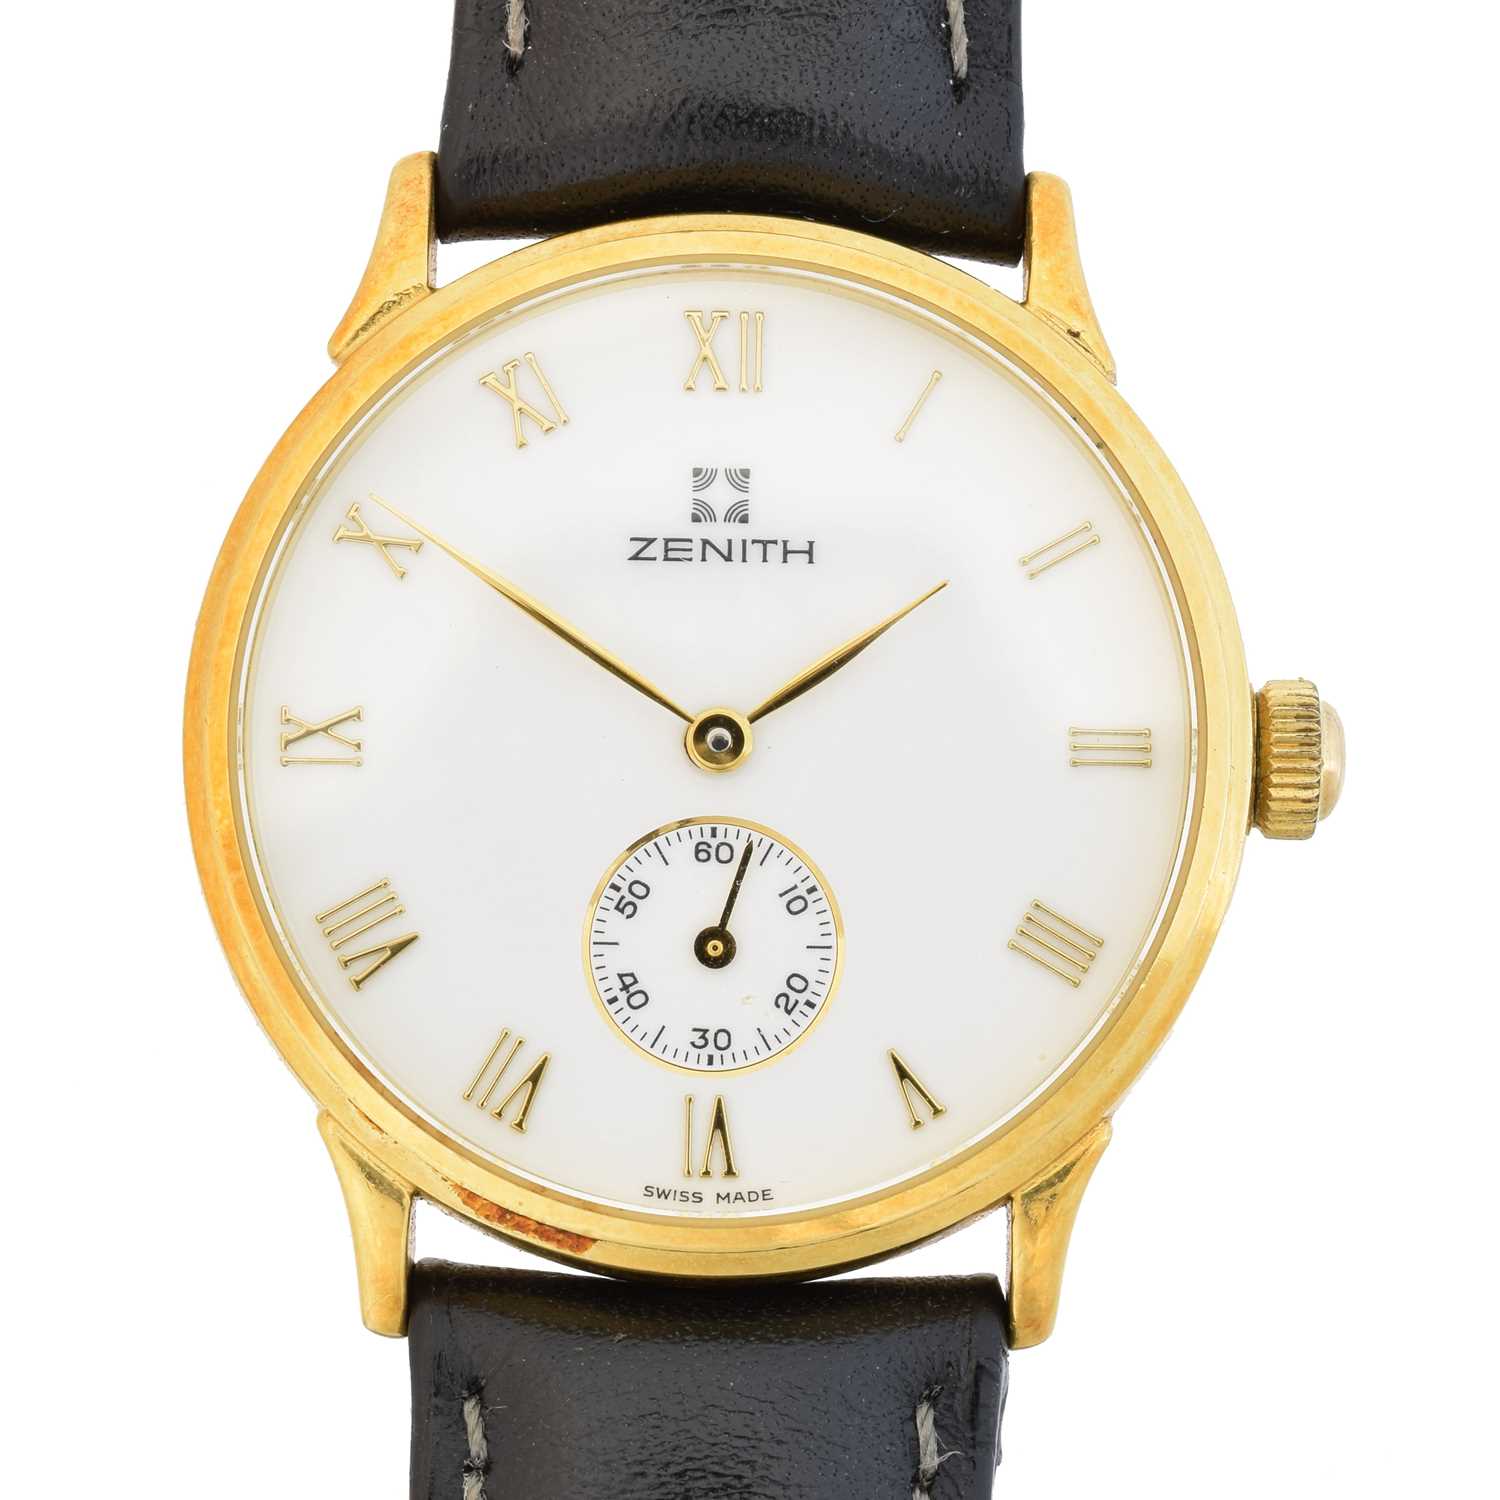 163 - An 18ct gold Zenith watch, 